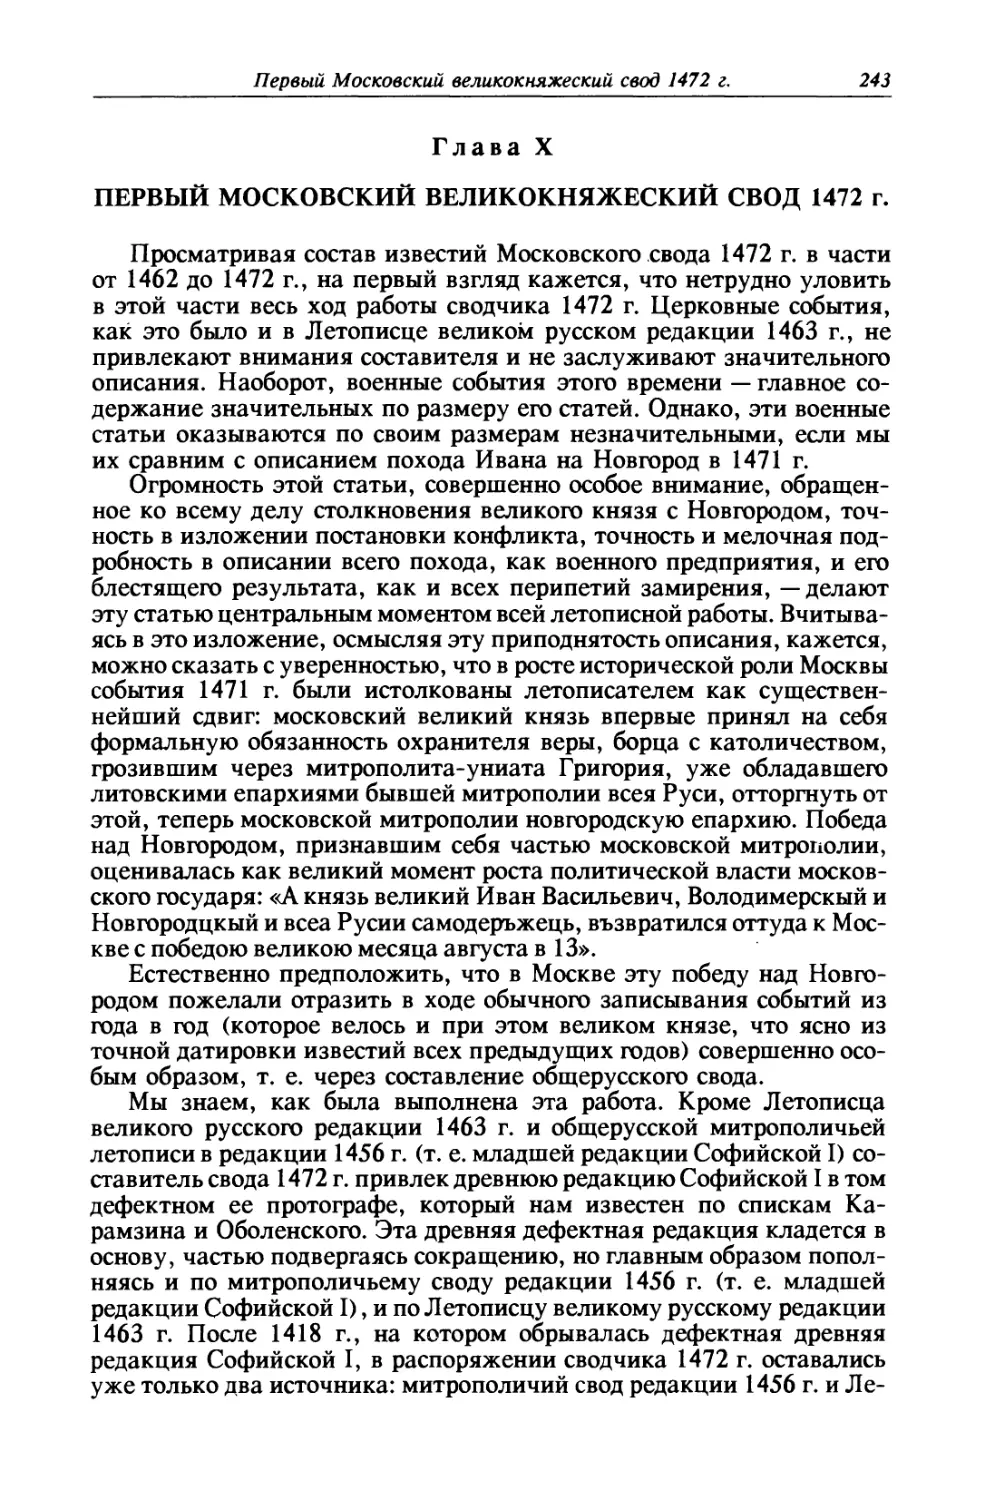 Глава X. Первый московский великокняжеский свод 1472 г